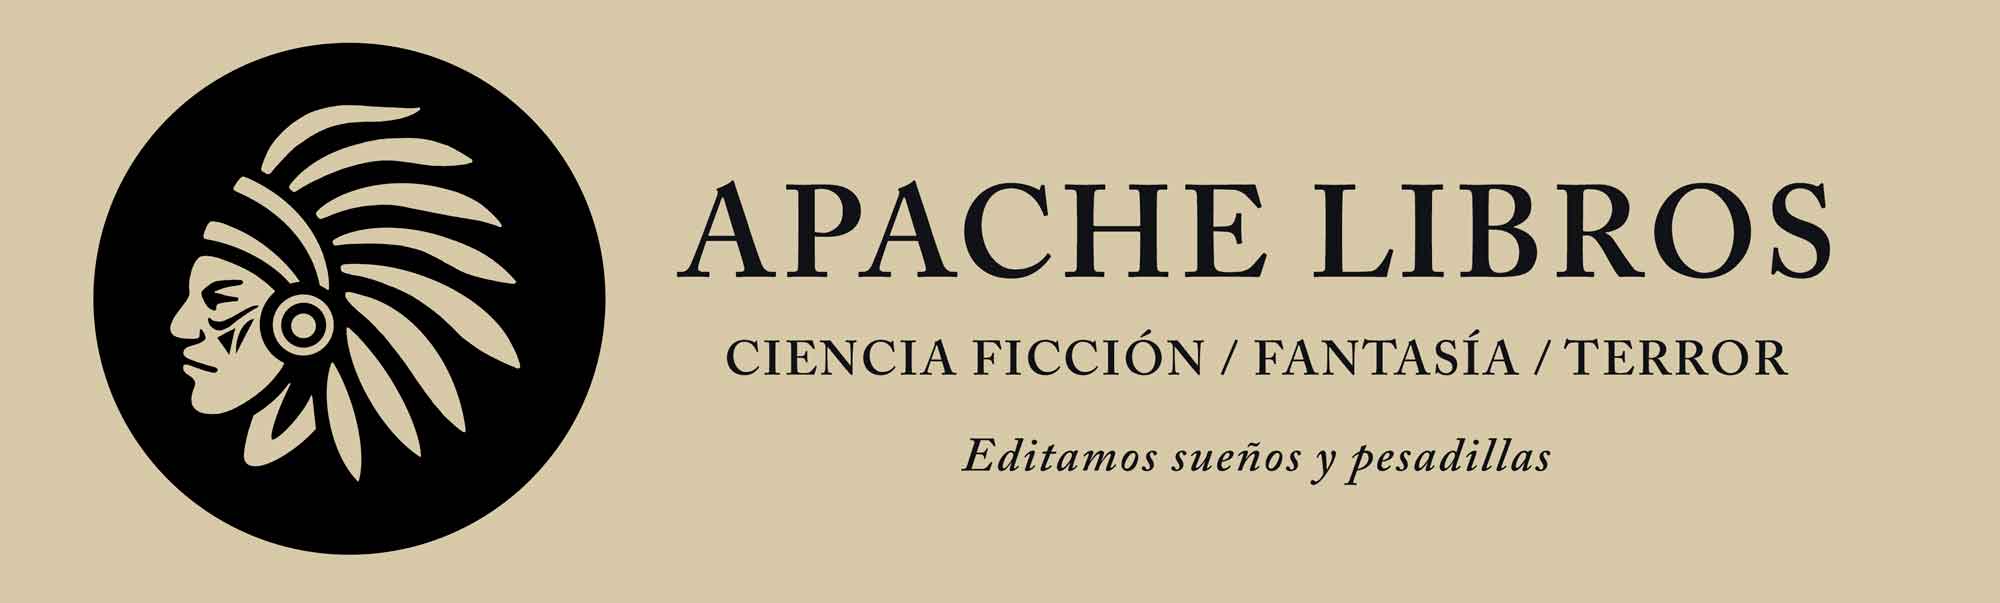 Apache. Libros